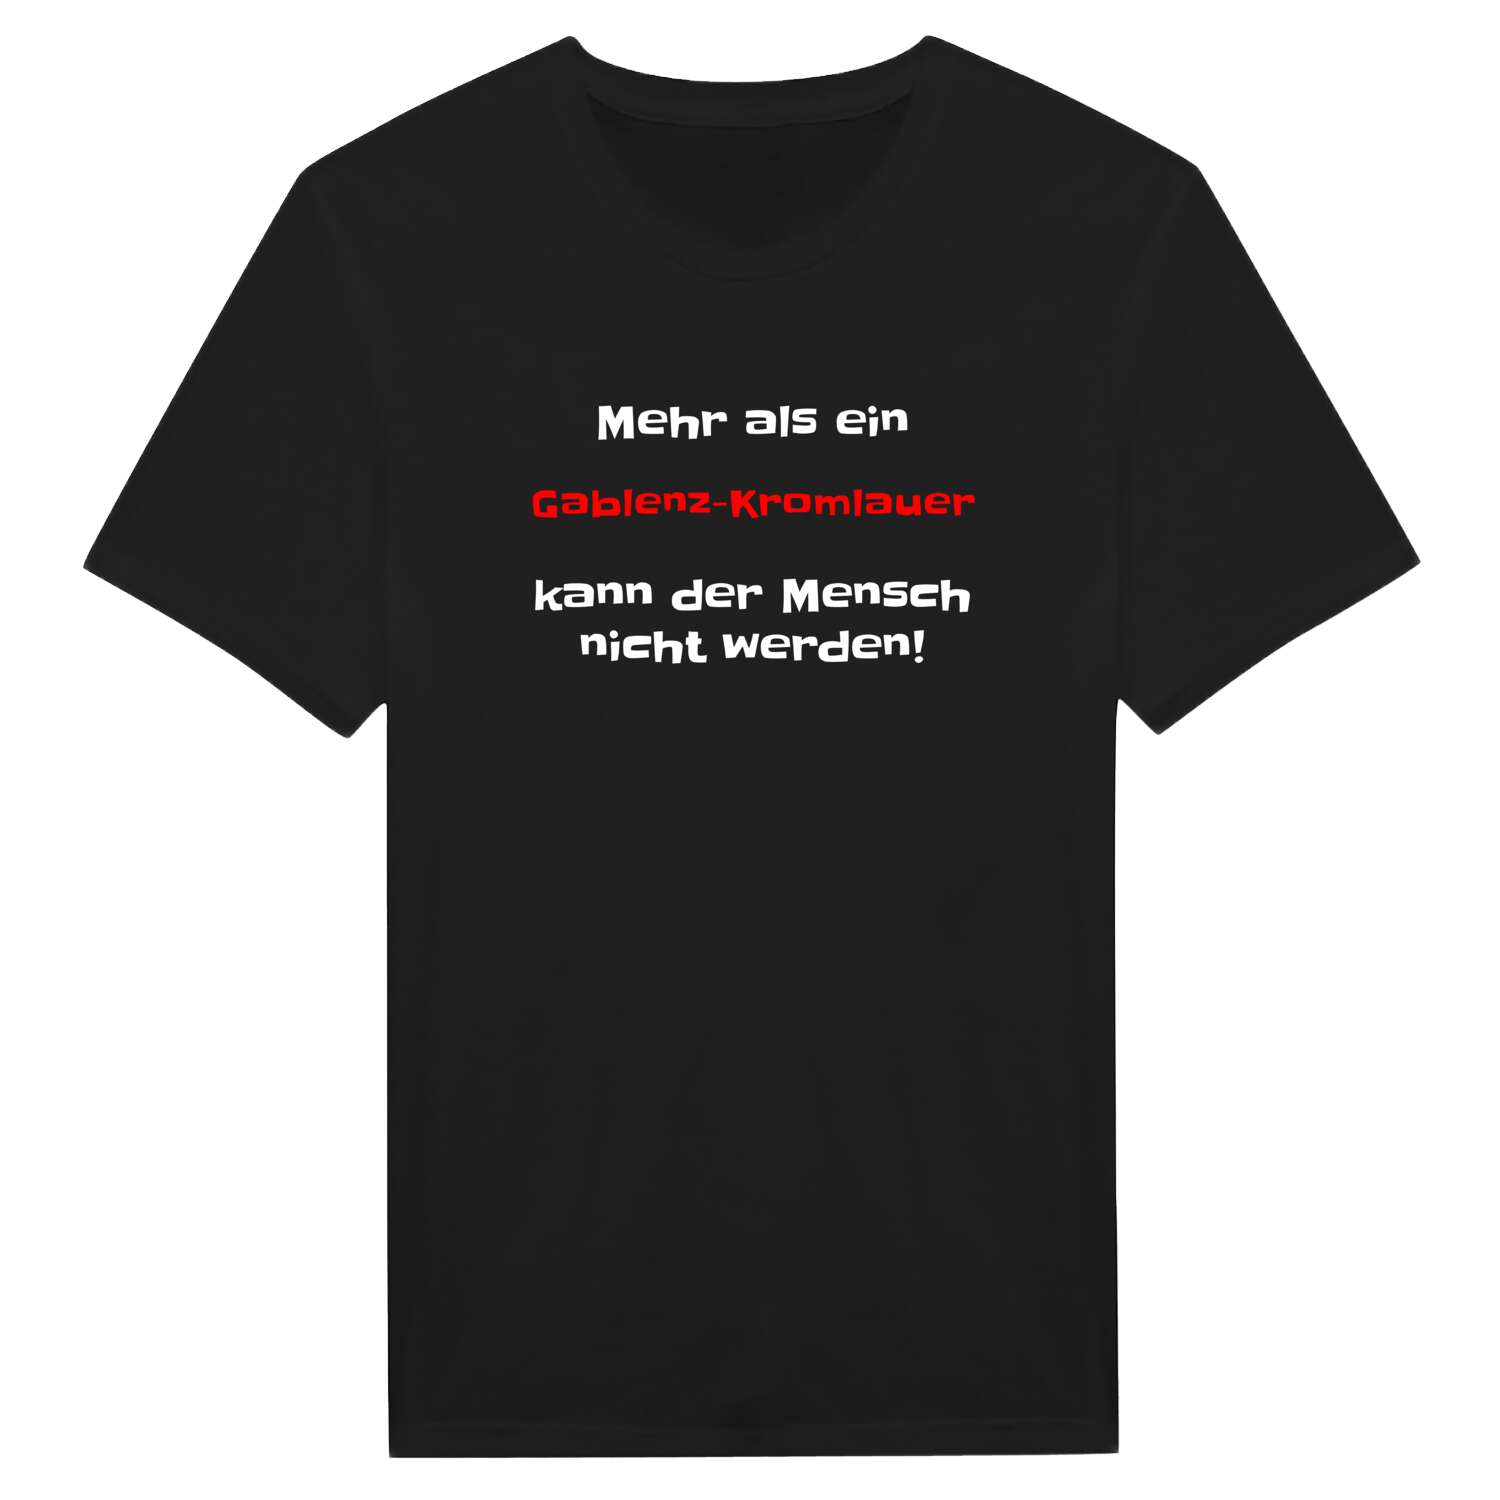 Gablenz-Kromlau T-Shirt »Mehr als ein«